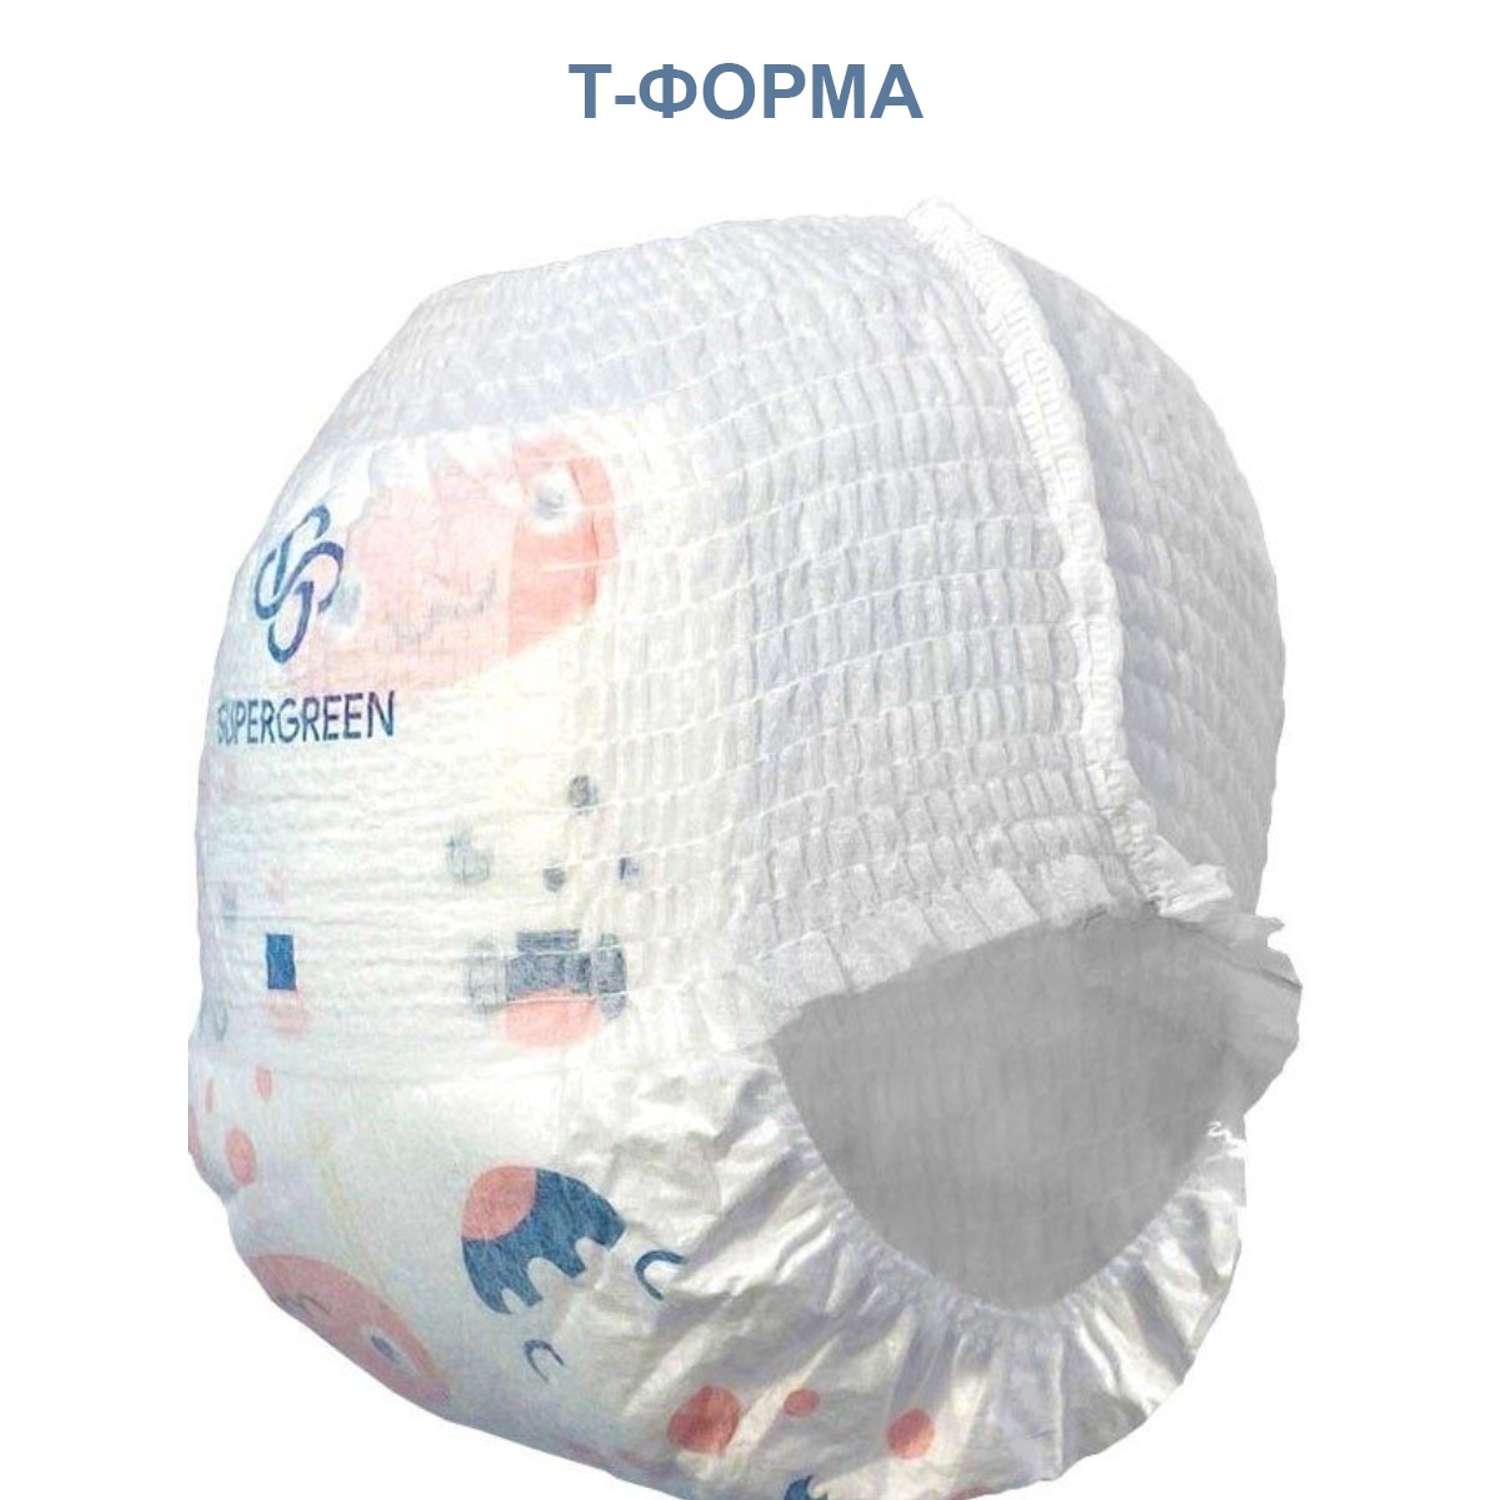 Трусики-подгузники SUPERGREEN Premium baby Pants L размер 4 упаковки по 44 шт 11-16 кг ультрамягкие - фото 2